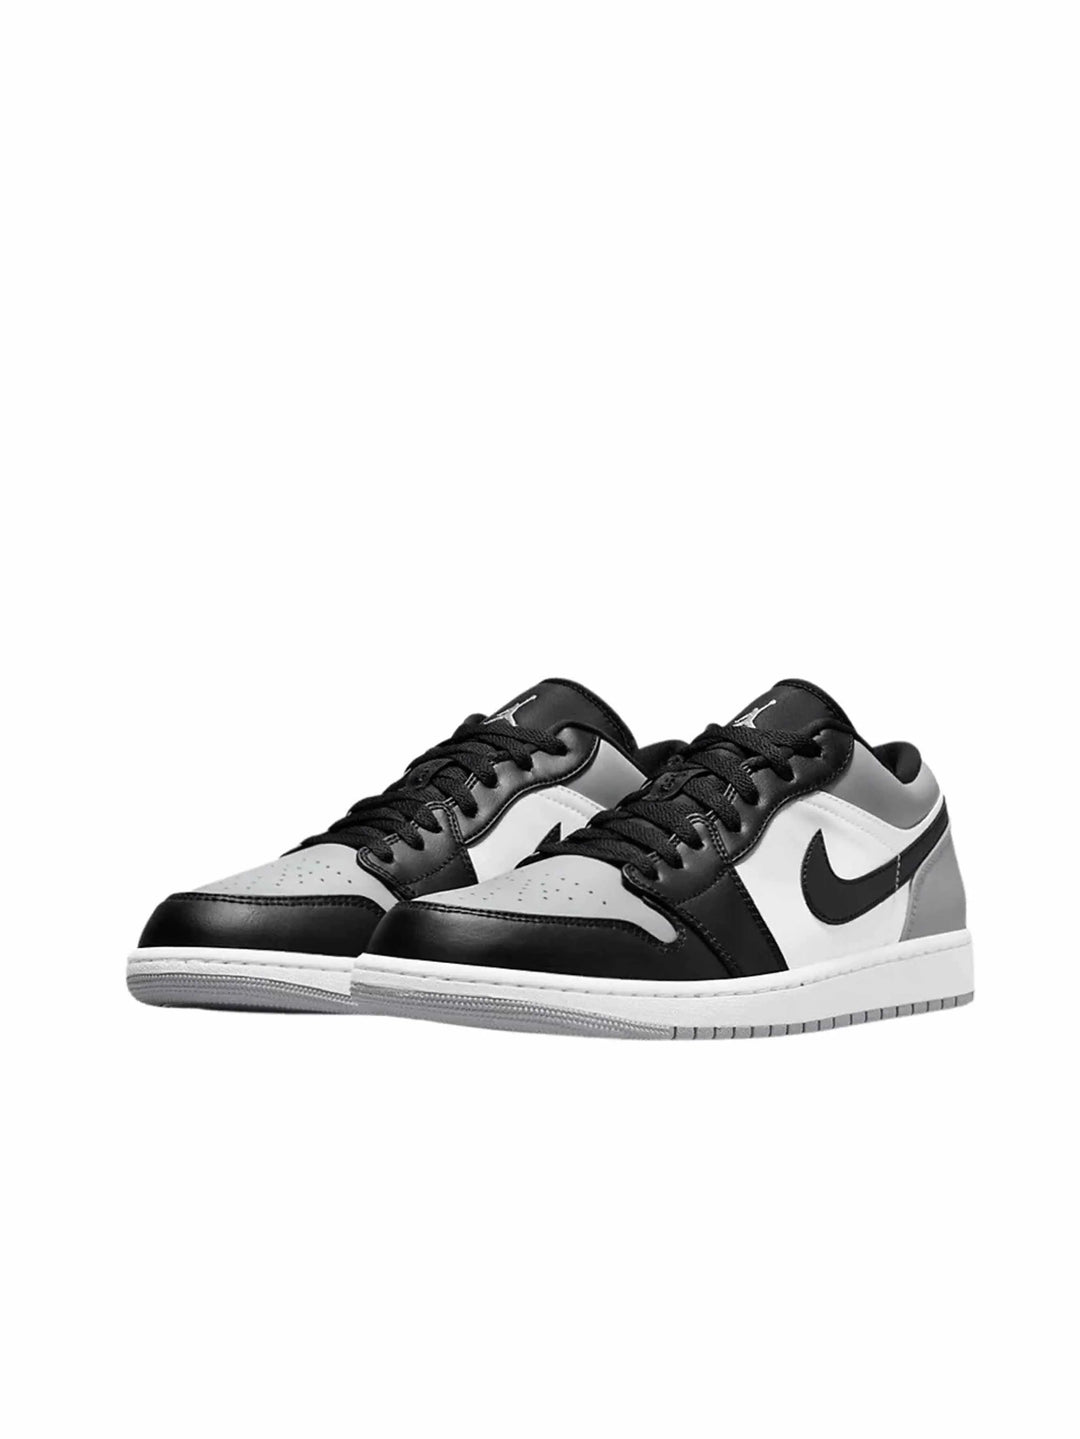 Nike Air Jordan 1 Low Shadow Toe (GS) - Prior